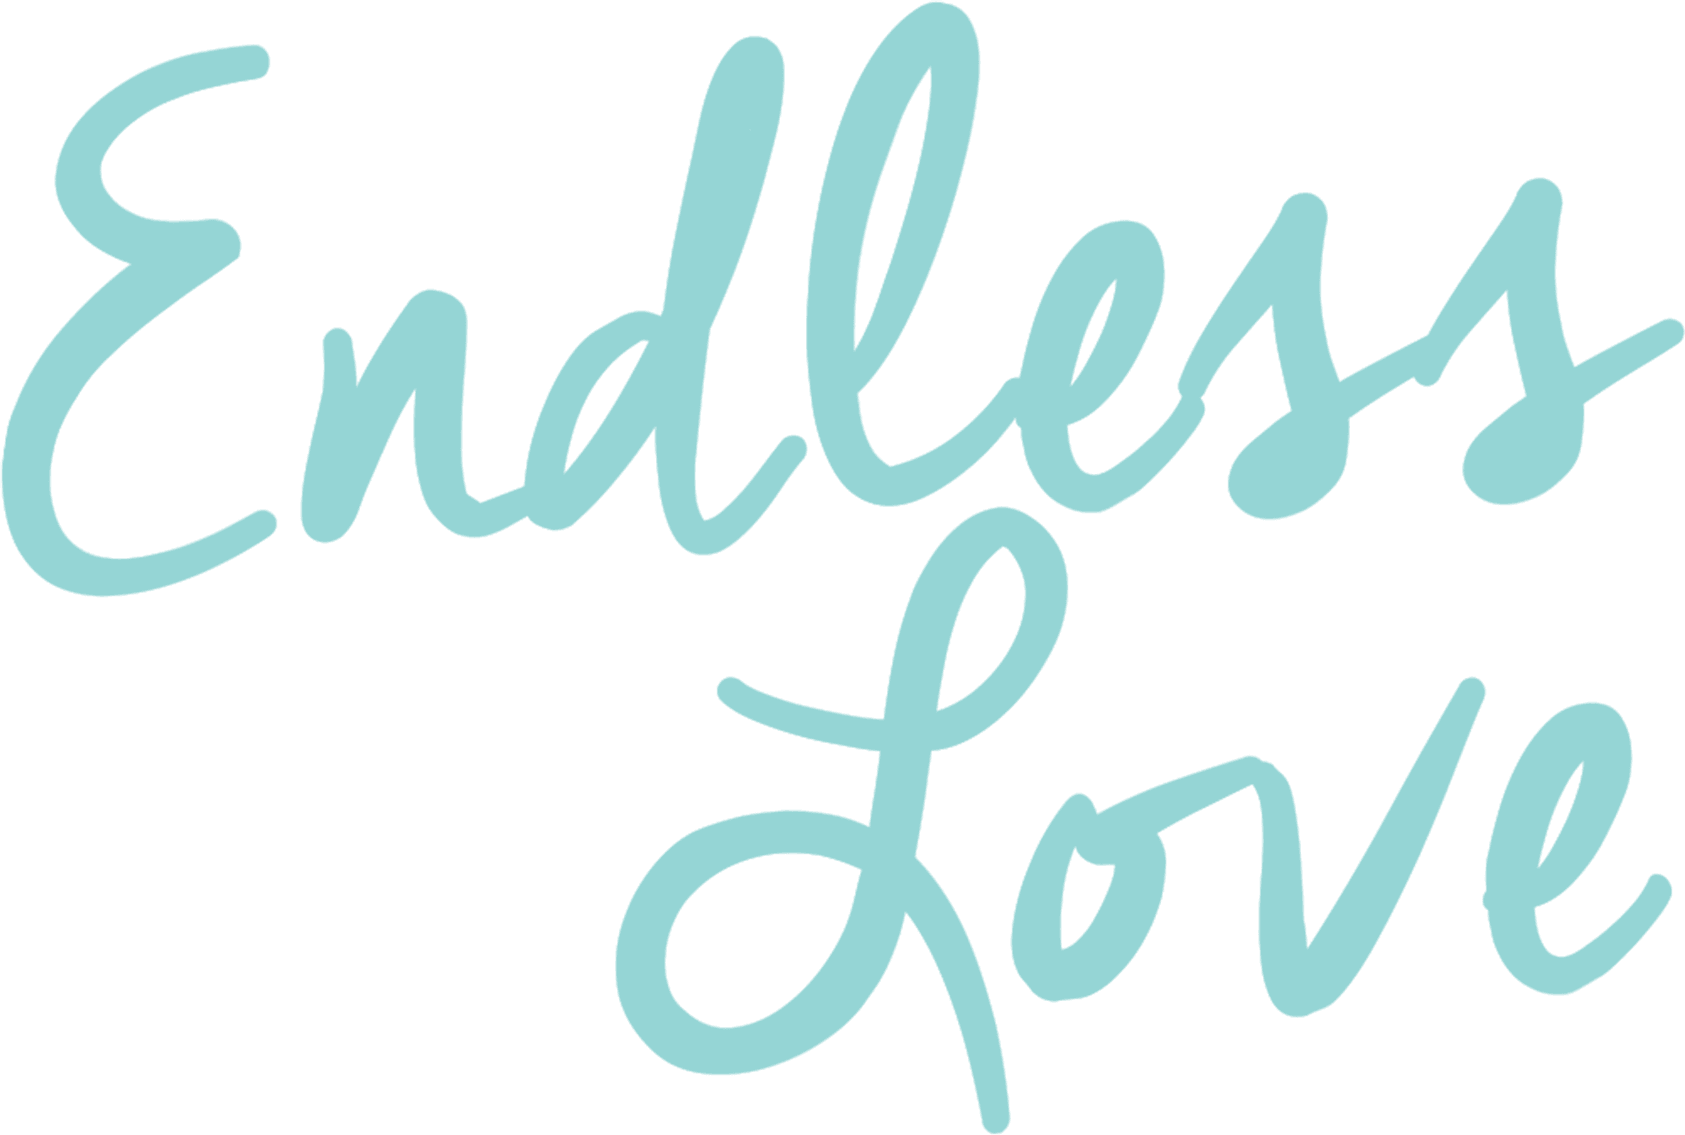 Endless Love logo